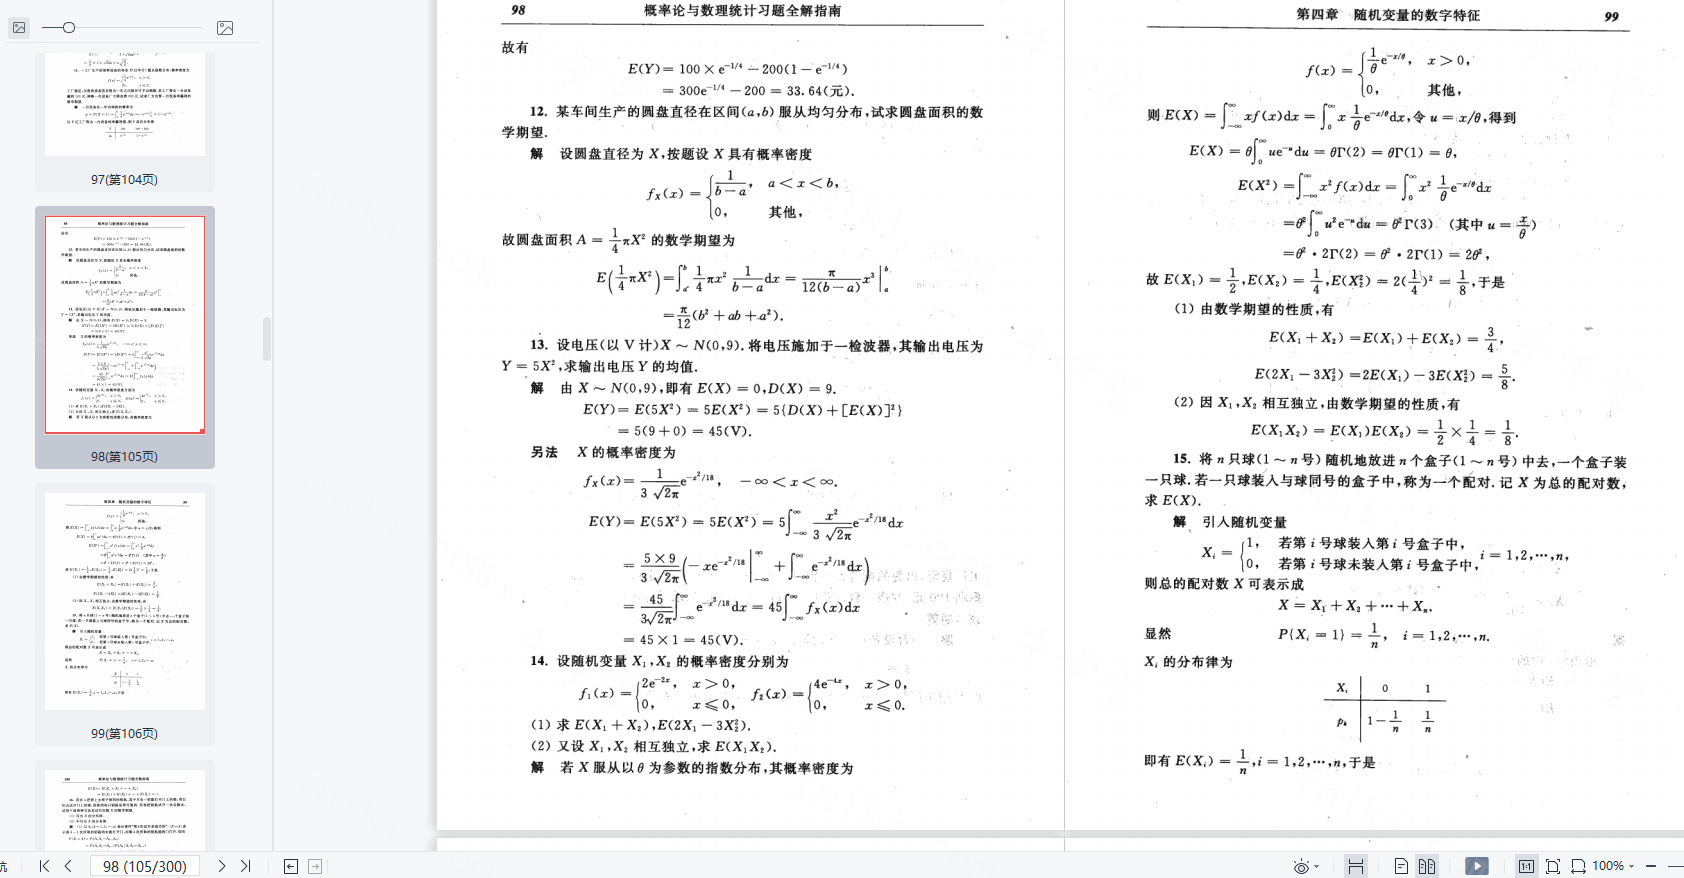 高等数学考研概率论与数理统计习题答案全解pdf(浙大第四版教材)